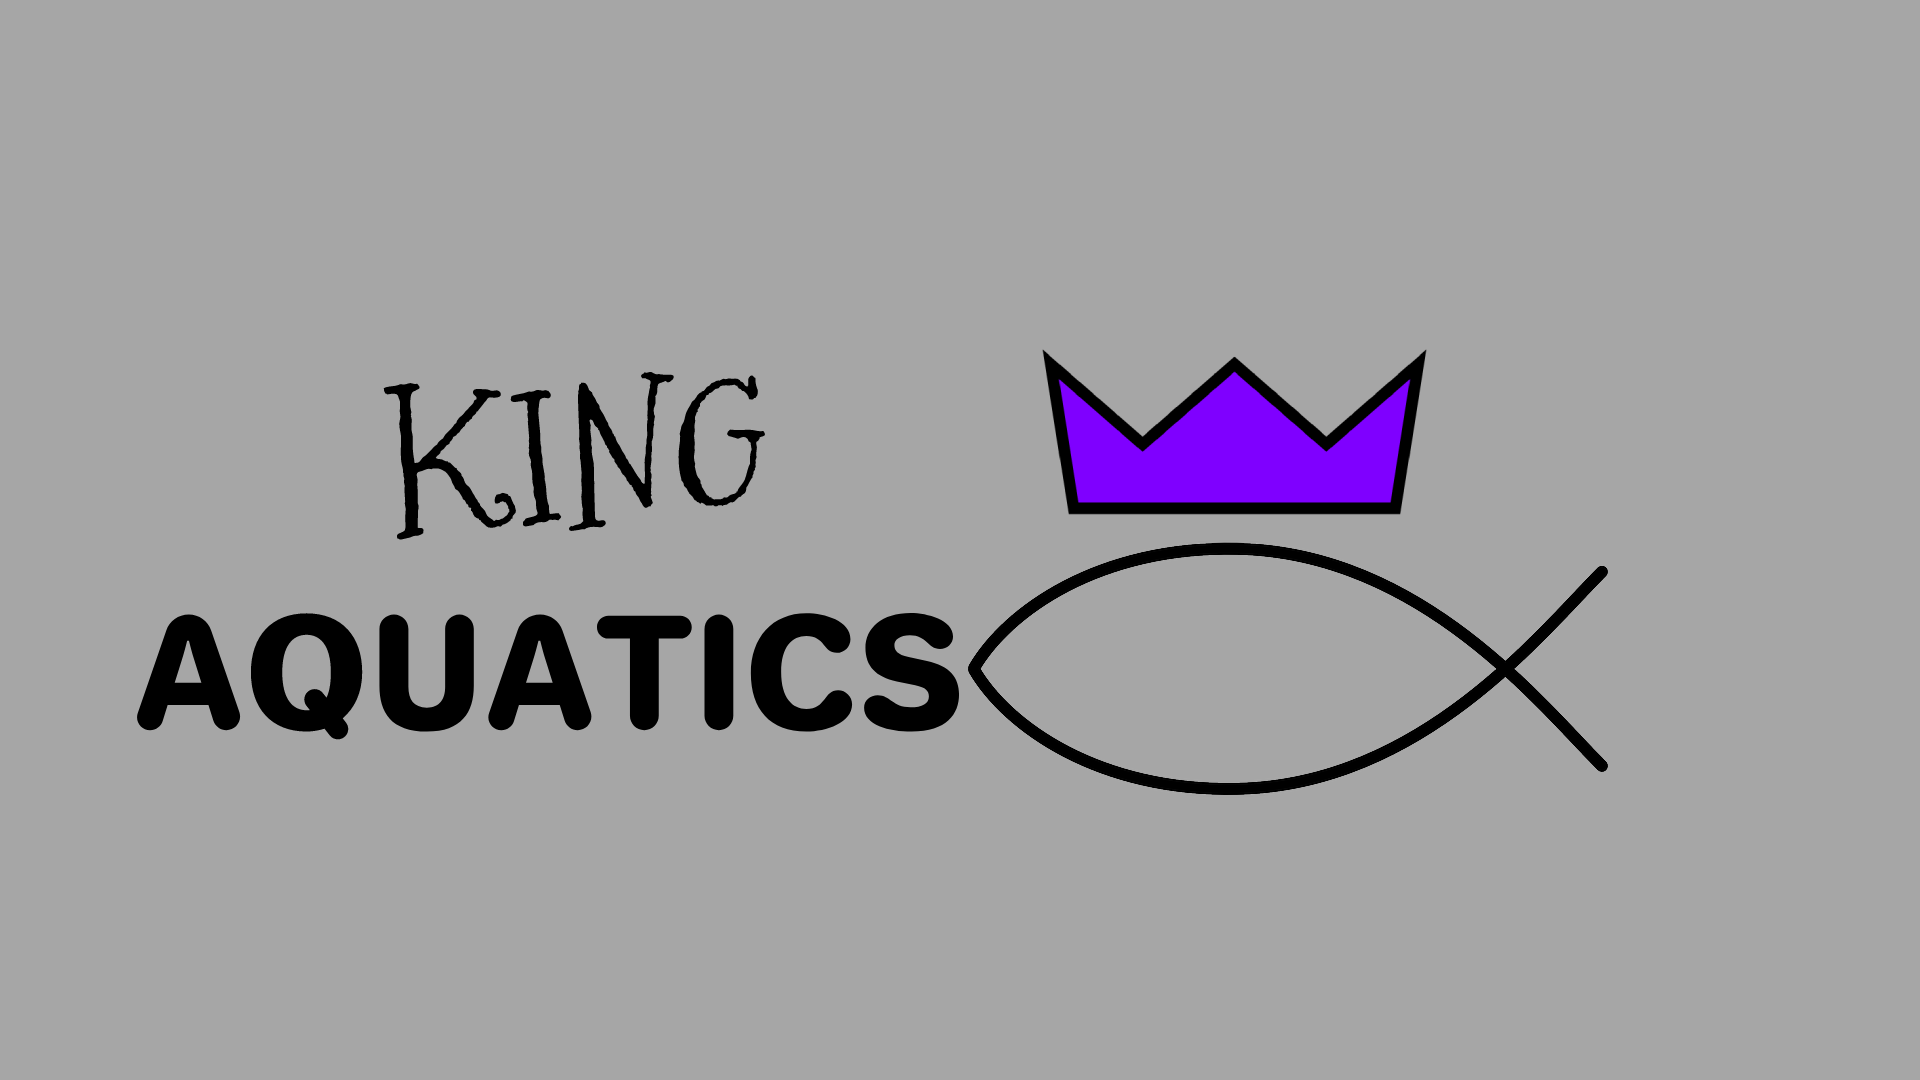 King Aquatics